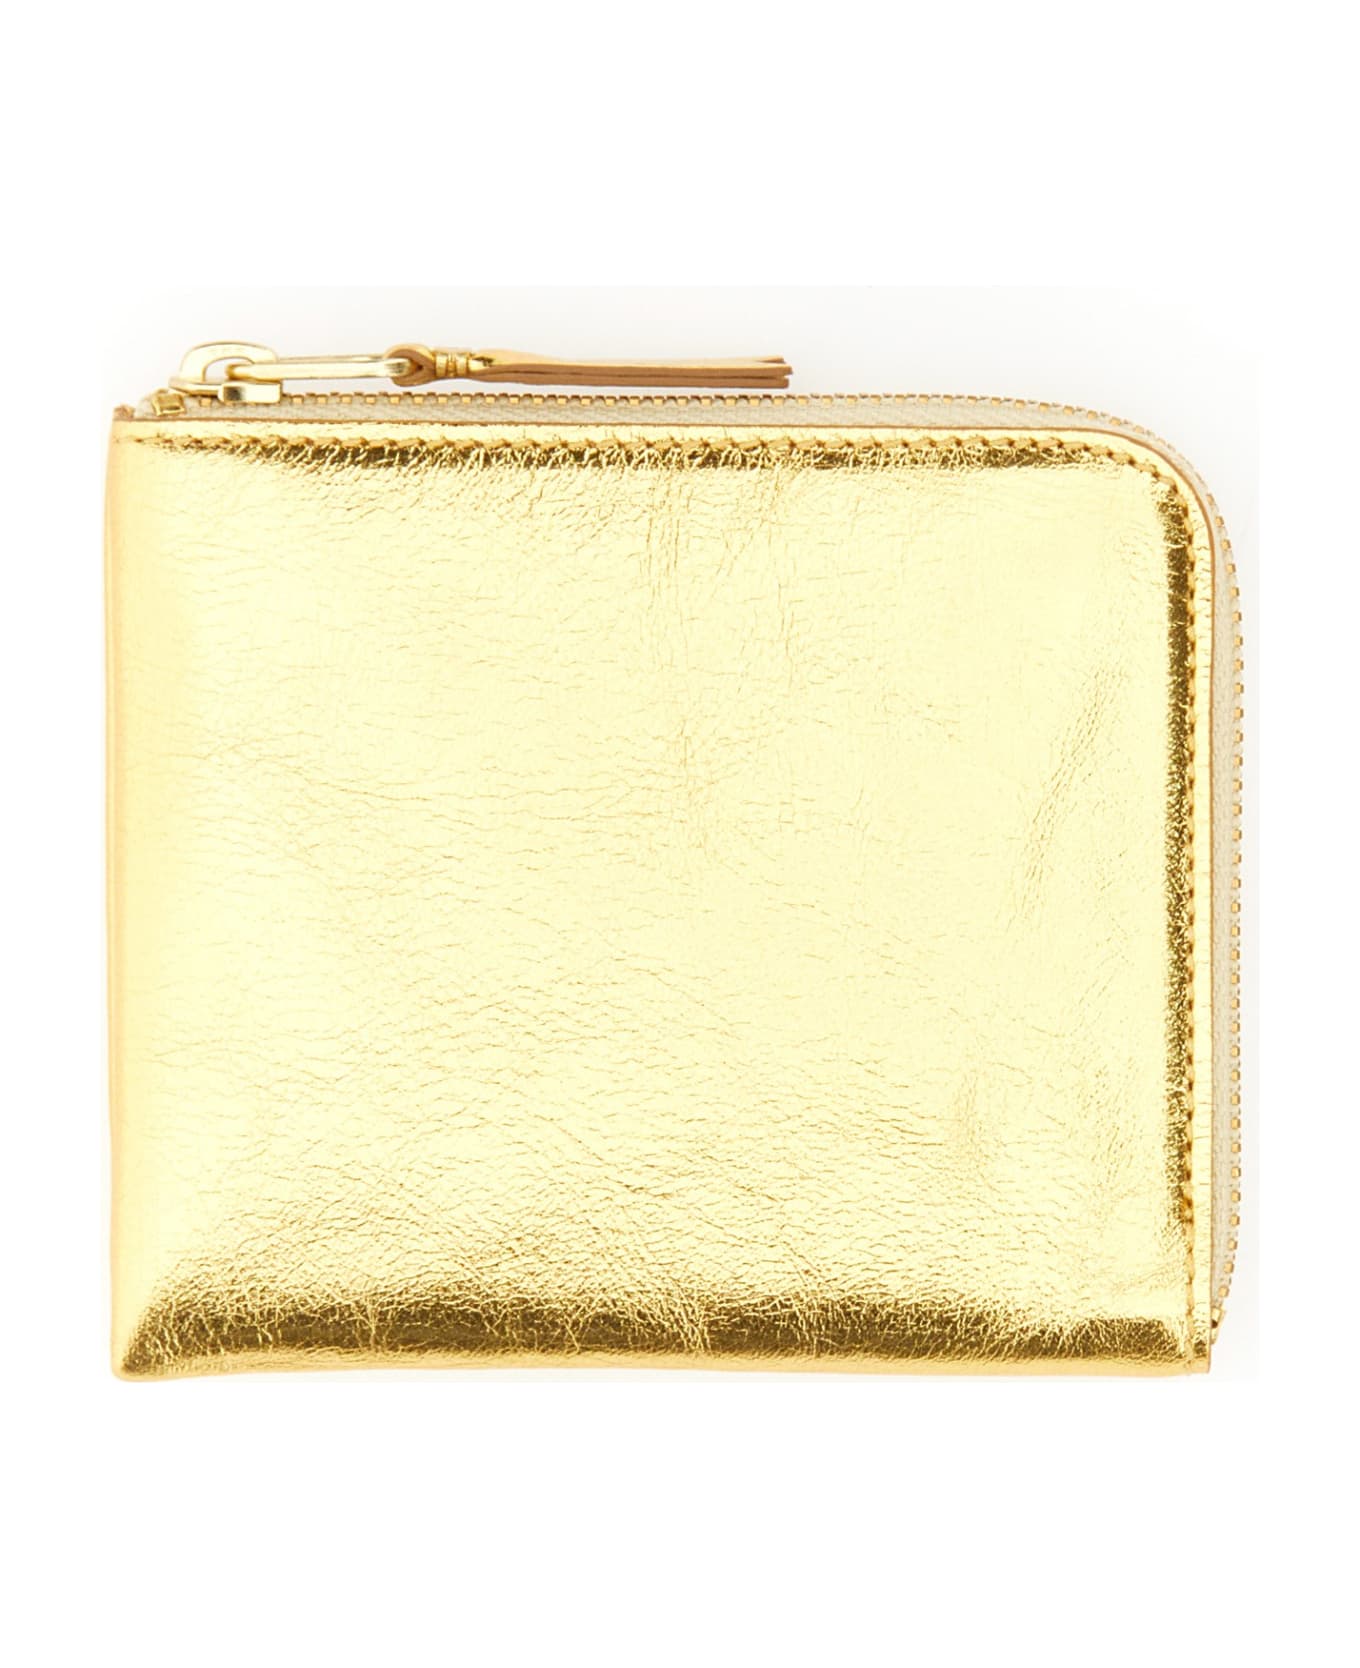 Comme des Garçons Wallet Leather Wallet - Golden 財布